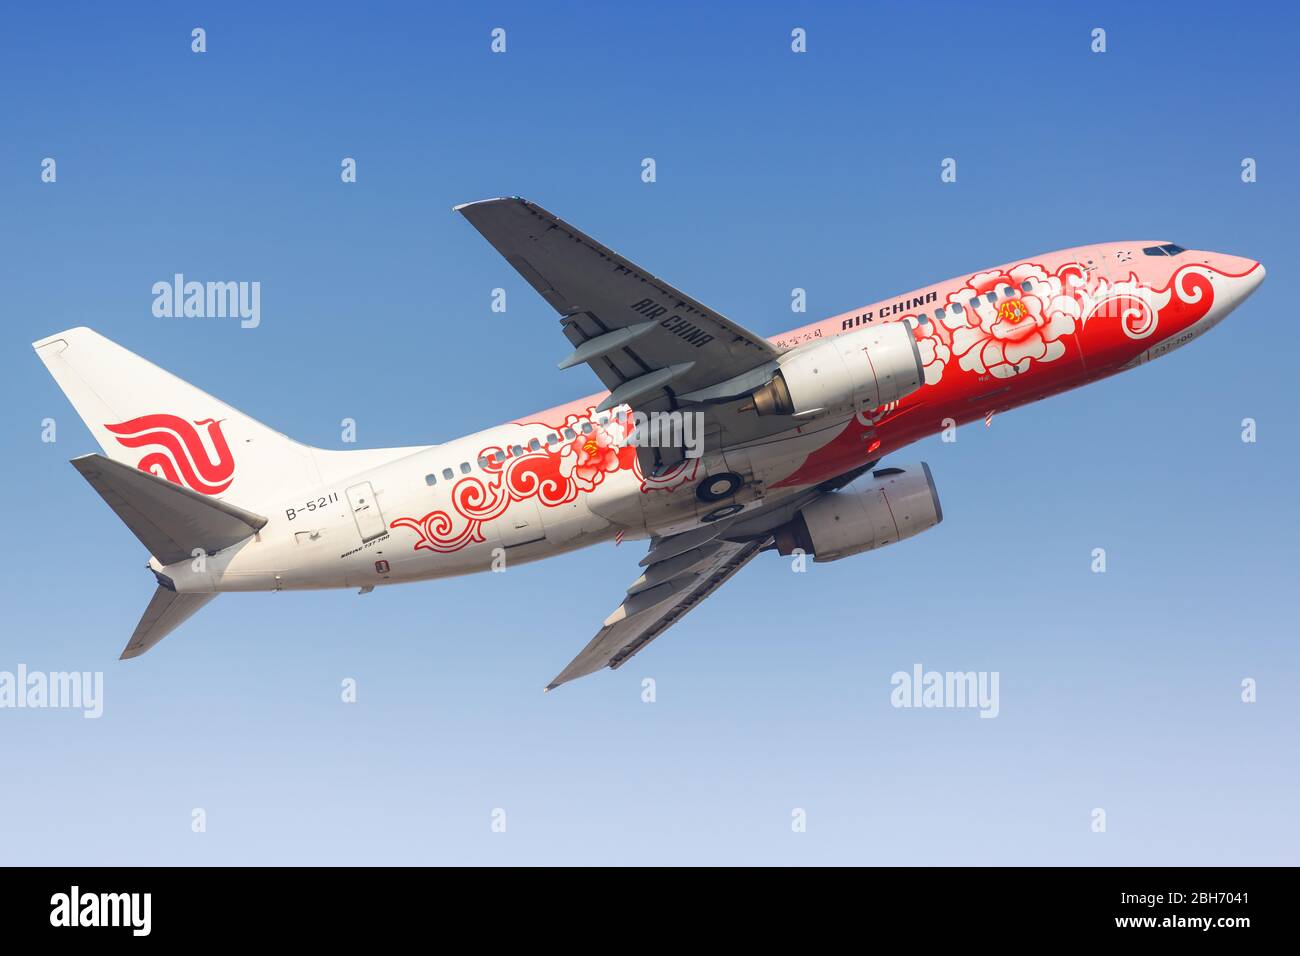 Tianjin, China – September 29, 2019: Air China Boeing 737-700 at Tianjin (TSN) airport in China. Stock Photo